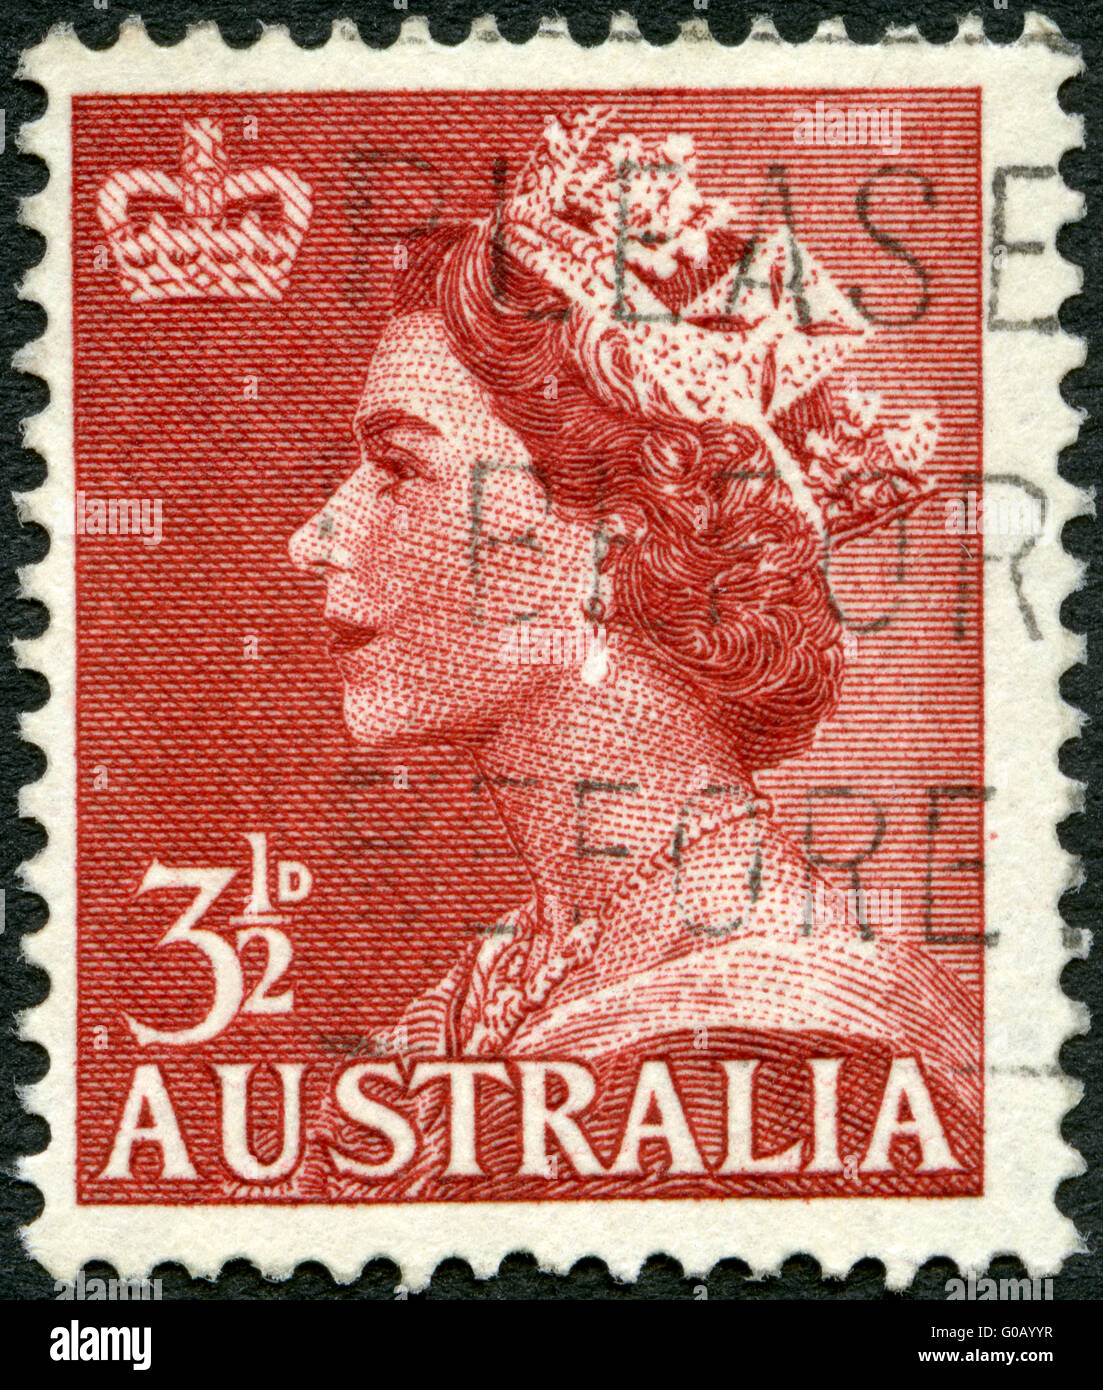 Australie - VERS 1953 : un timbre imprimé en Australie montre la reine Elizabeth II Banque D'Images